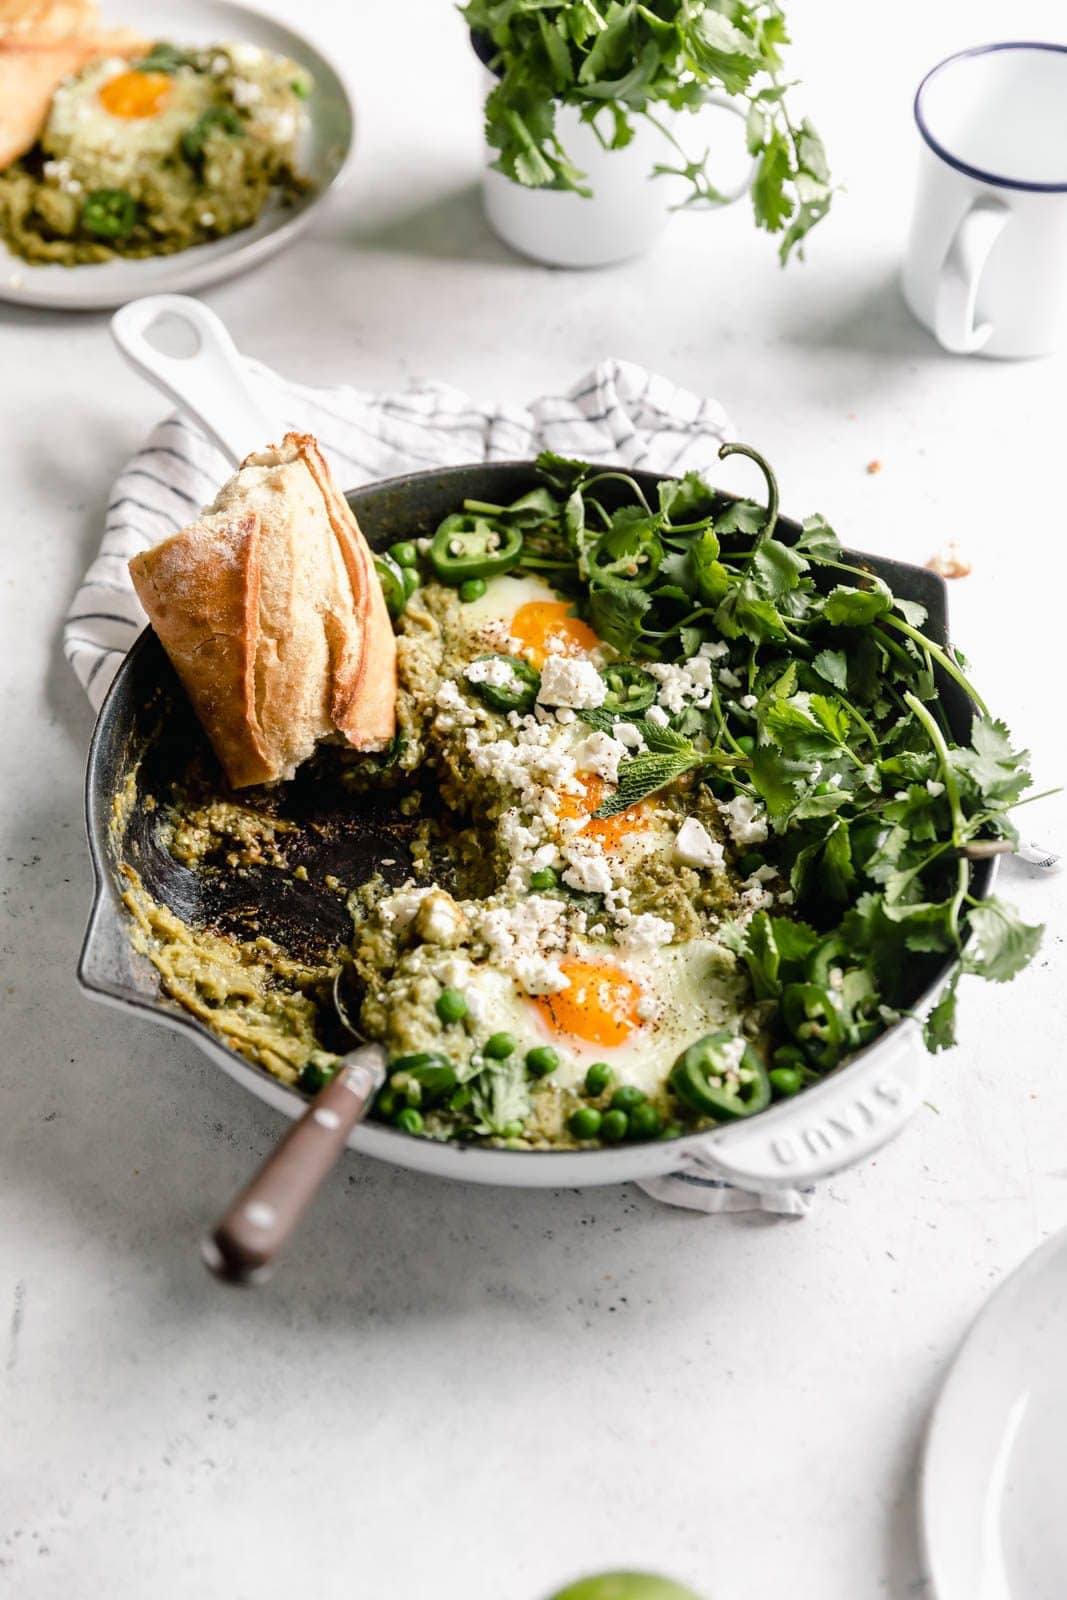 Zöld Shakshuka, más néven buggyantott tojás, fűszerezett zöld paradicsomszószban főzve, korianderrel és fetával.  Beszéljen az eddigi legjobb reggeliről!